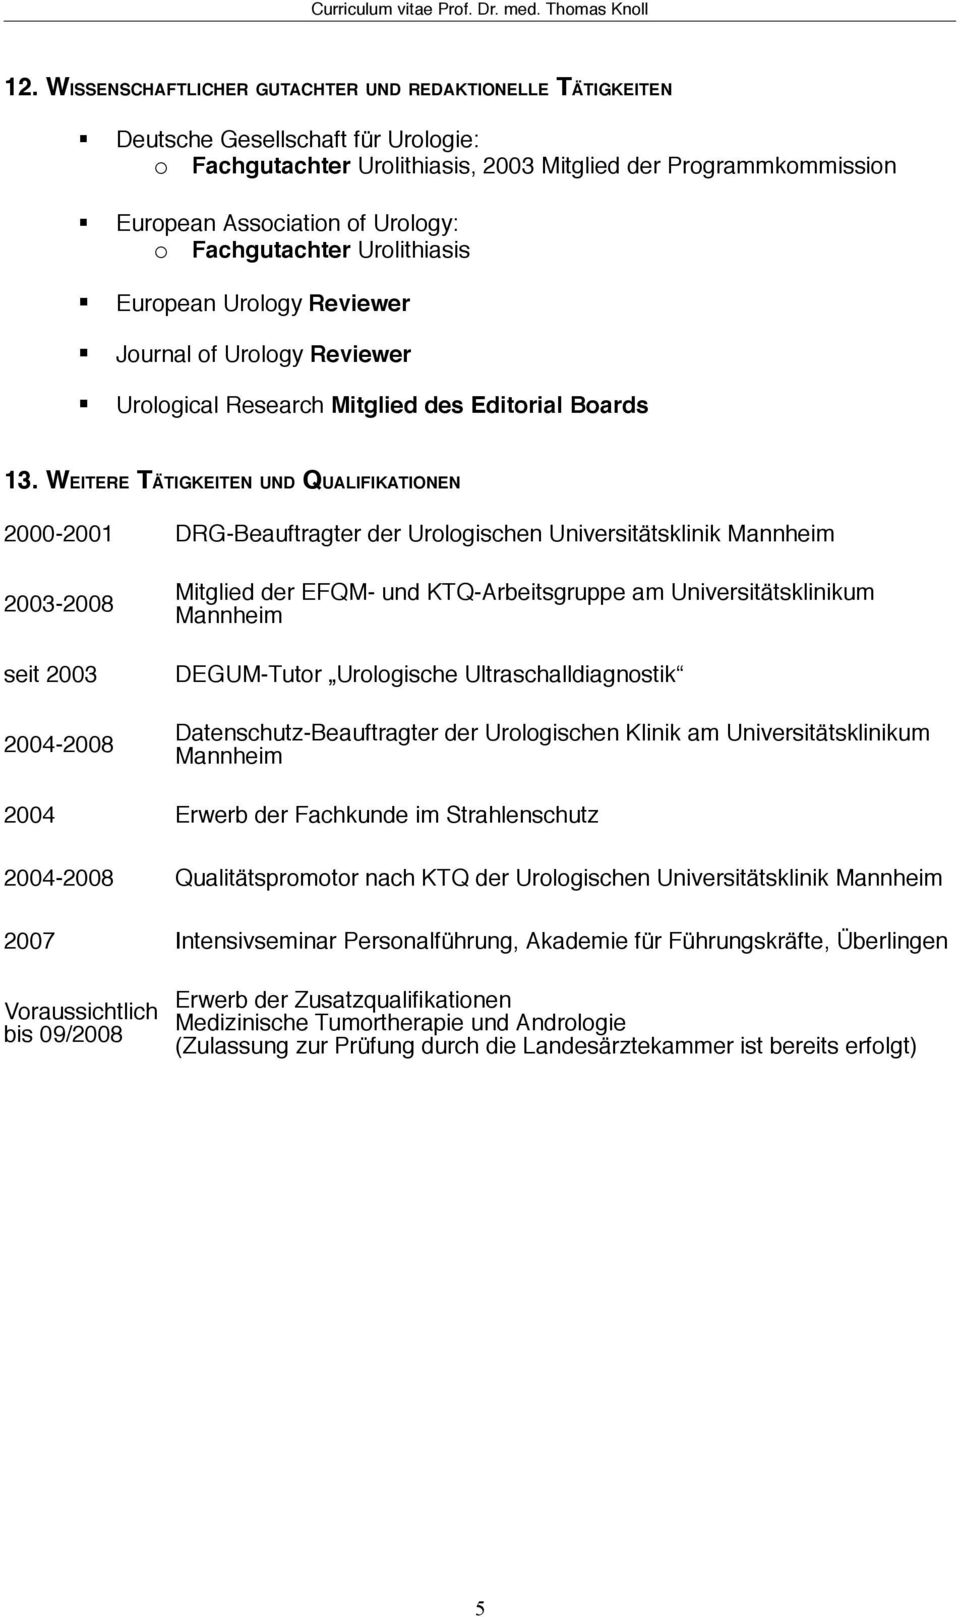 WEITERE TÄTIGKEITEN UND QUALIFIKATIONEN 2000-2001 DRG-Beauftragter der Urologischen Universitätsklinik 2003-2008 seit 2003 2004-2008 Mitglied der EFQM- und KTQ-Arbeitsgruppe am Universitätsklinikum